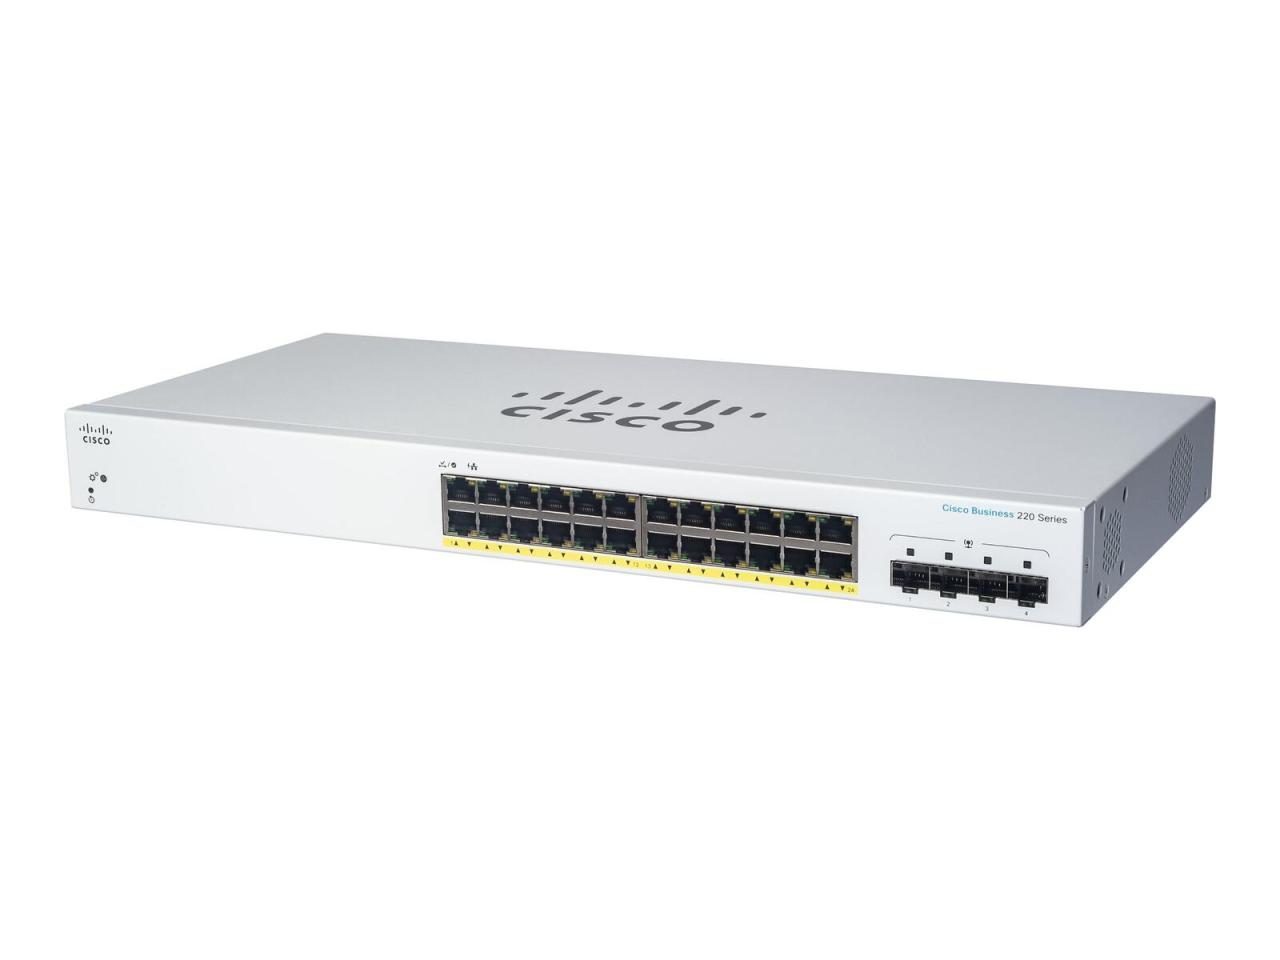 Cisco Switch Business 220-Series 28-Port 1GbE smart managed von Cisco